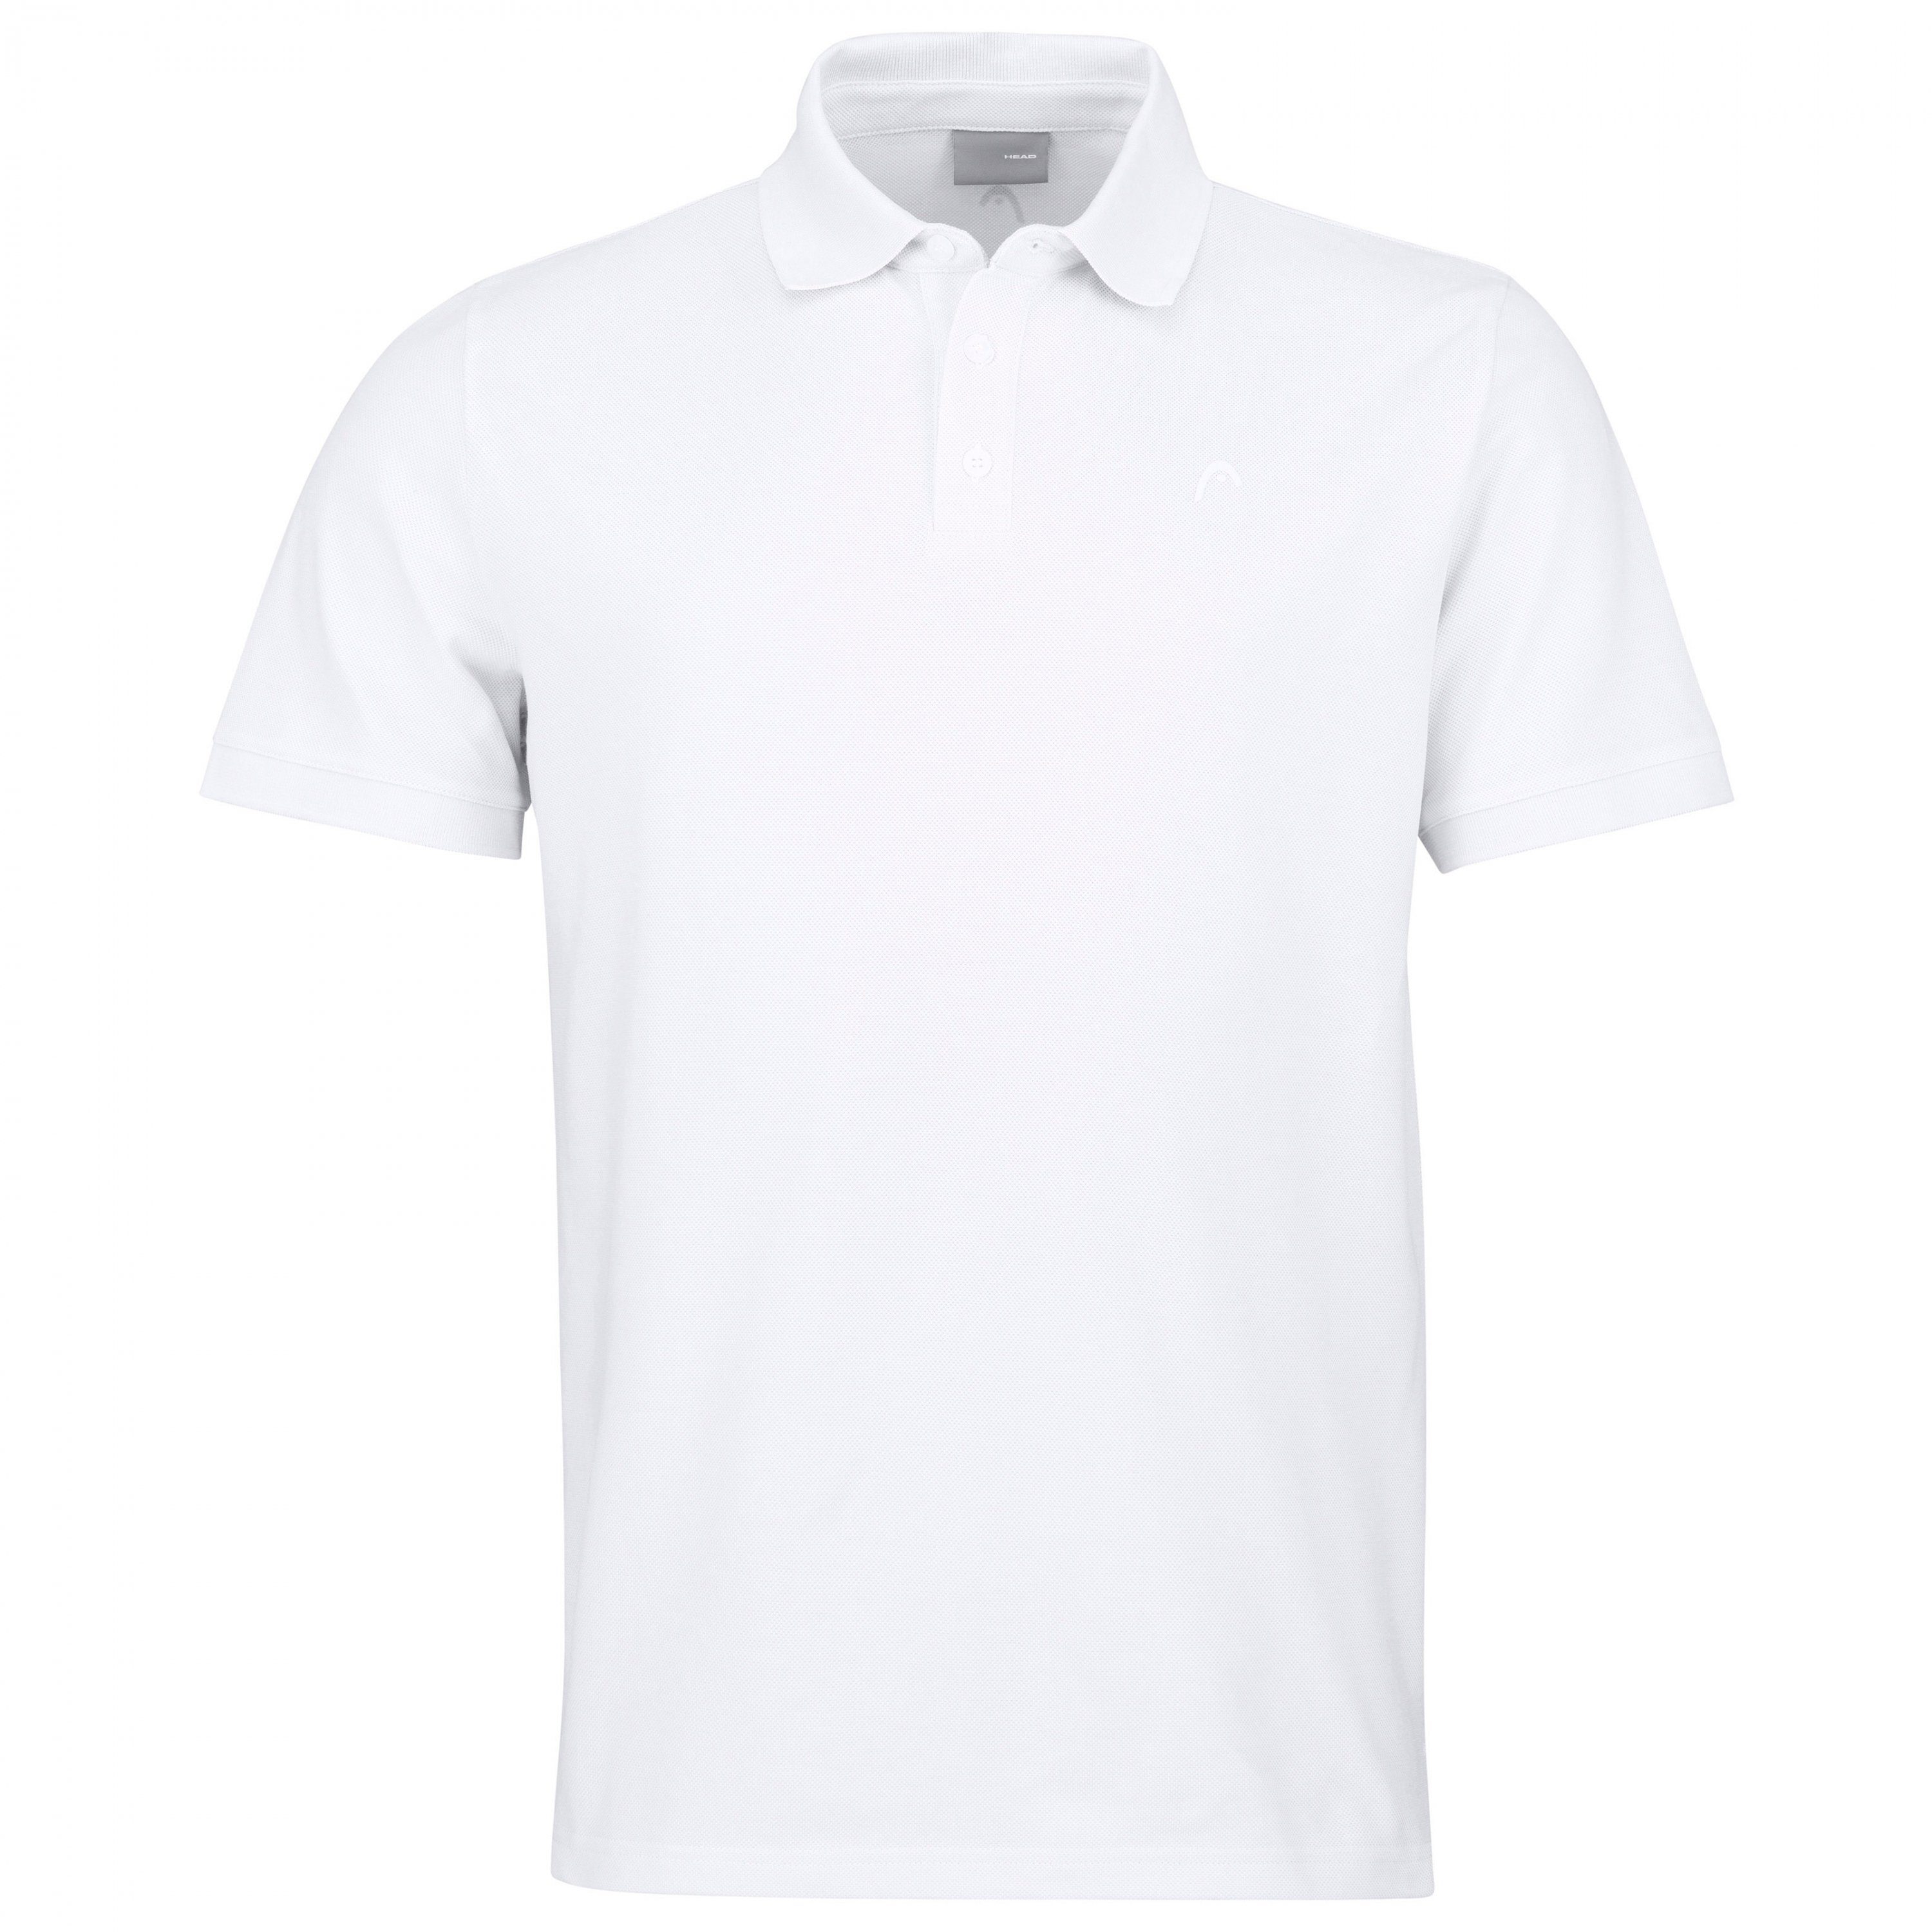 Head Tennisshirt Head Herren Polo Shirt